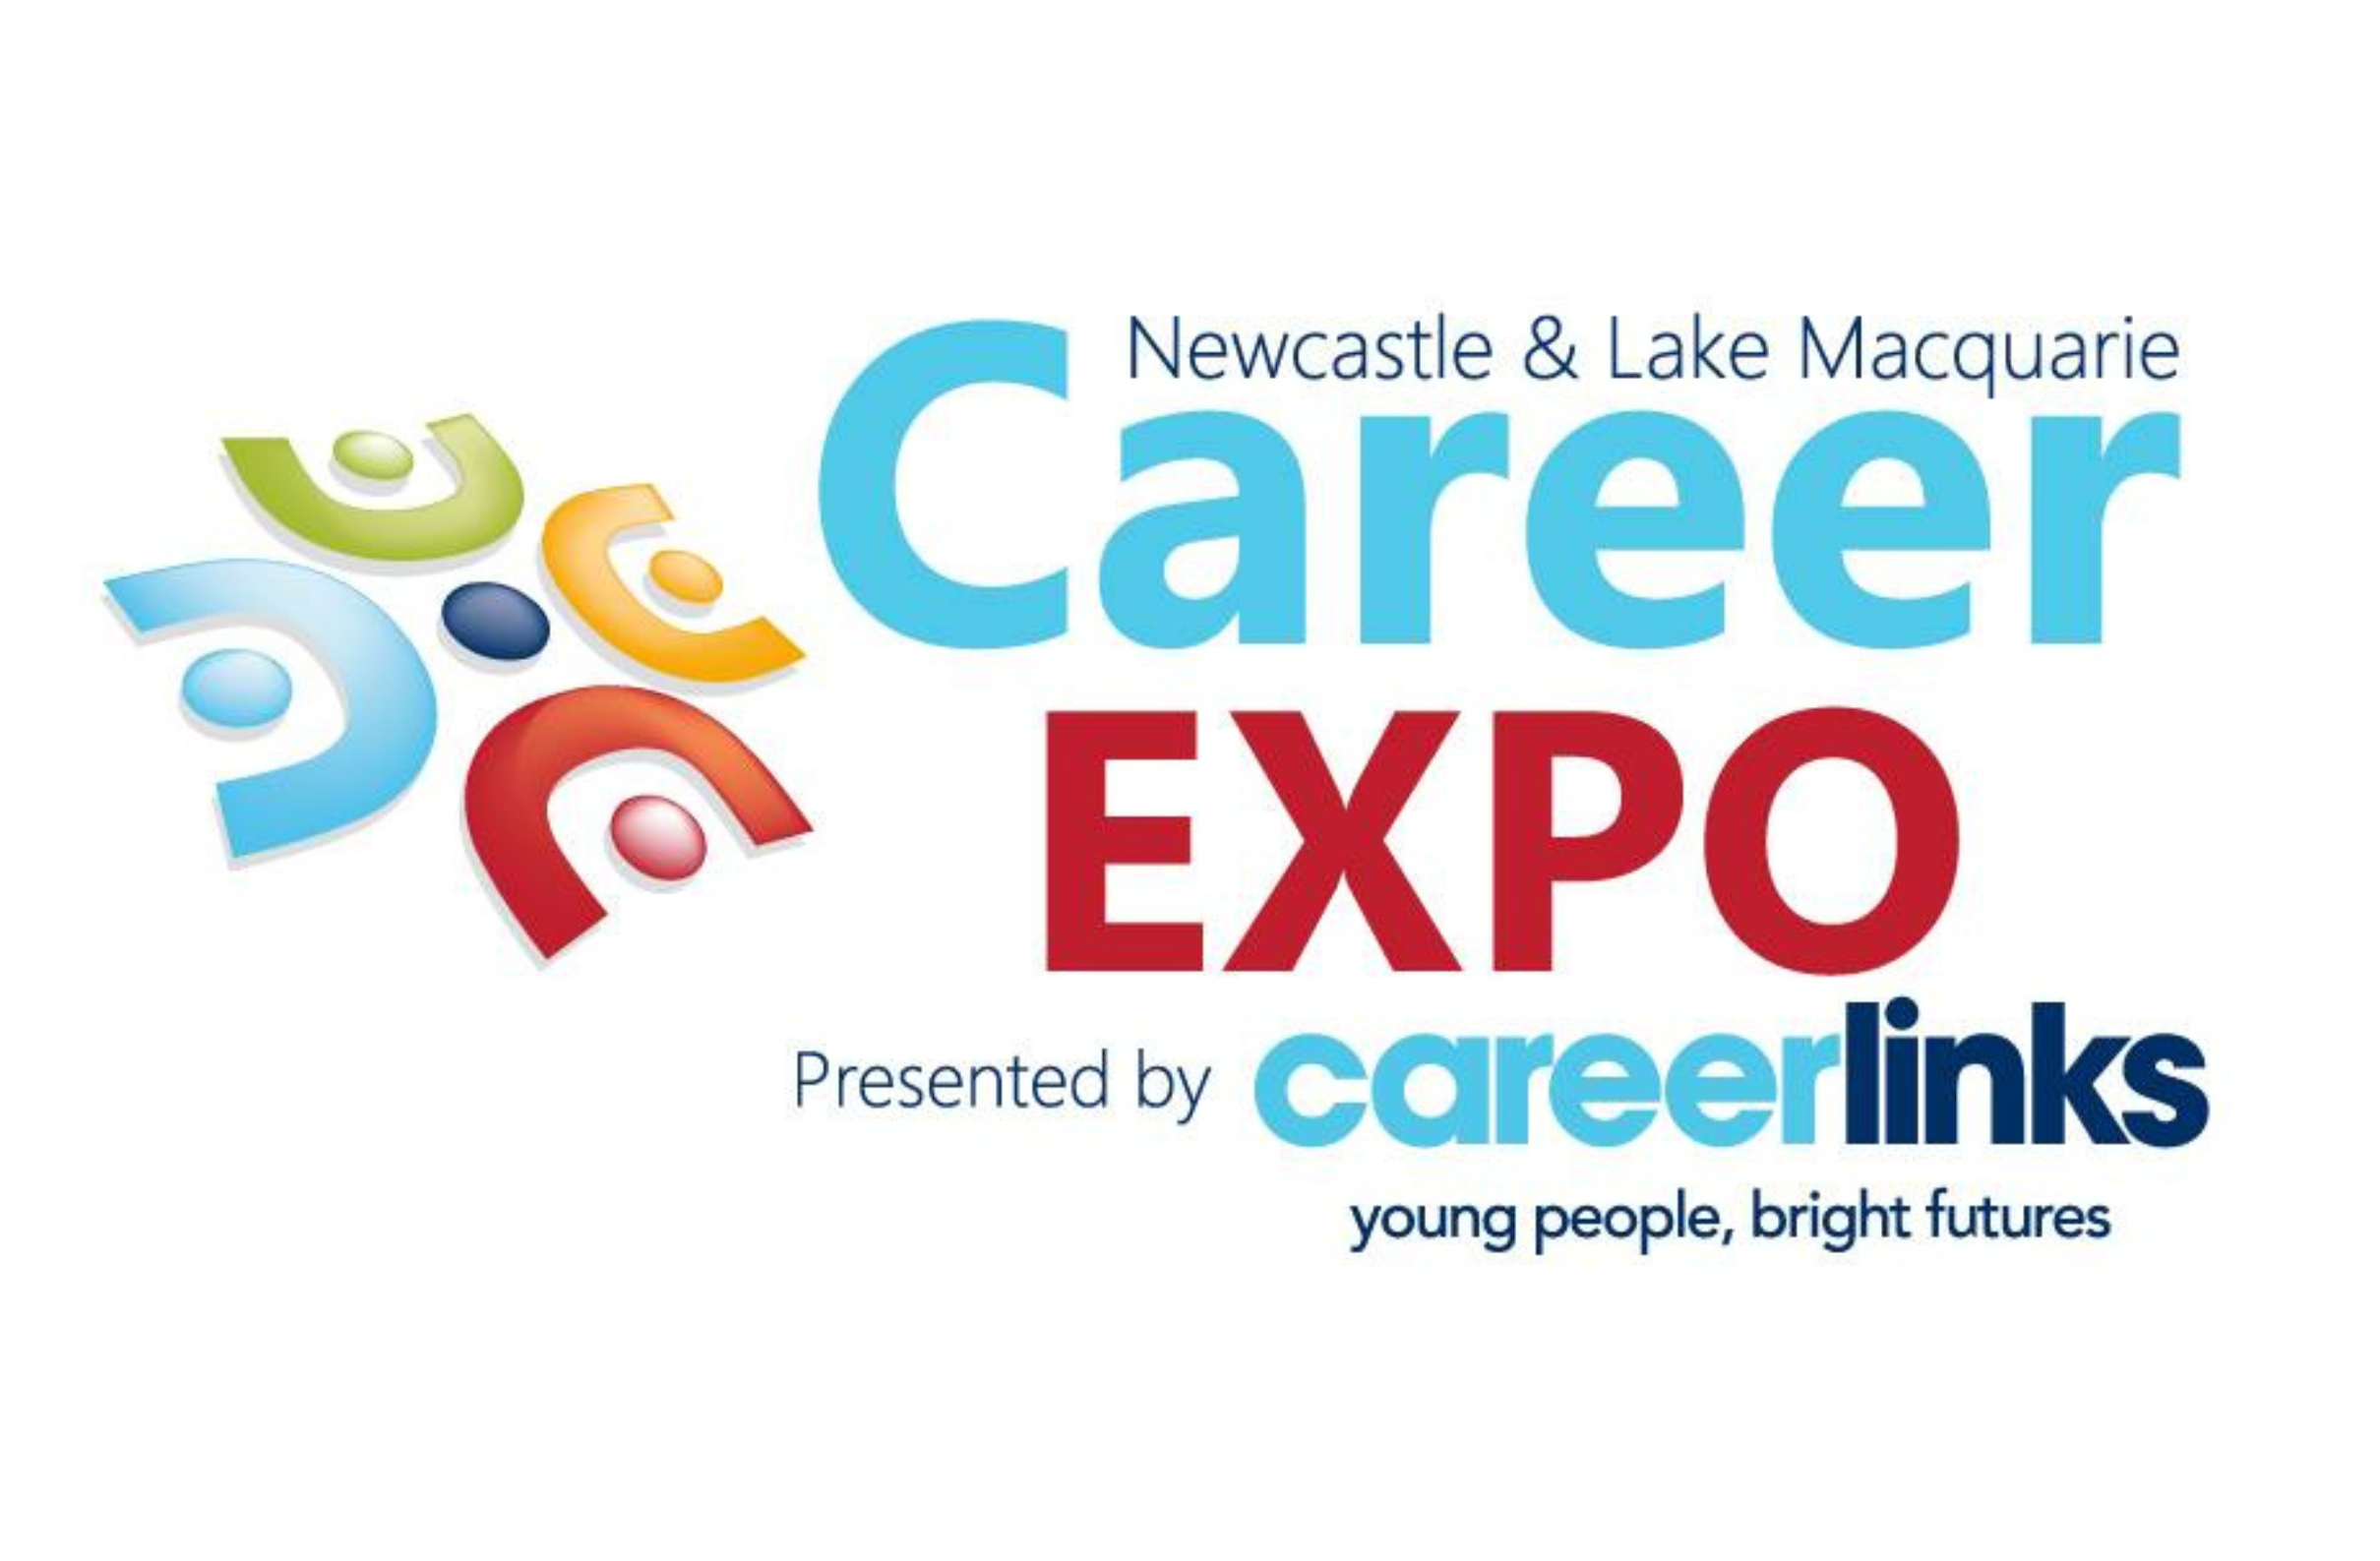 Newcastle & Lake Macquarie Career Expo